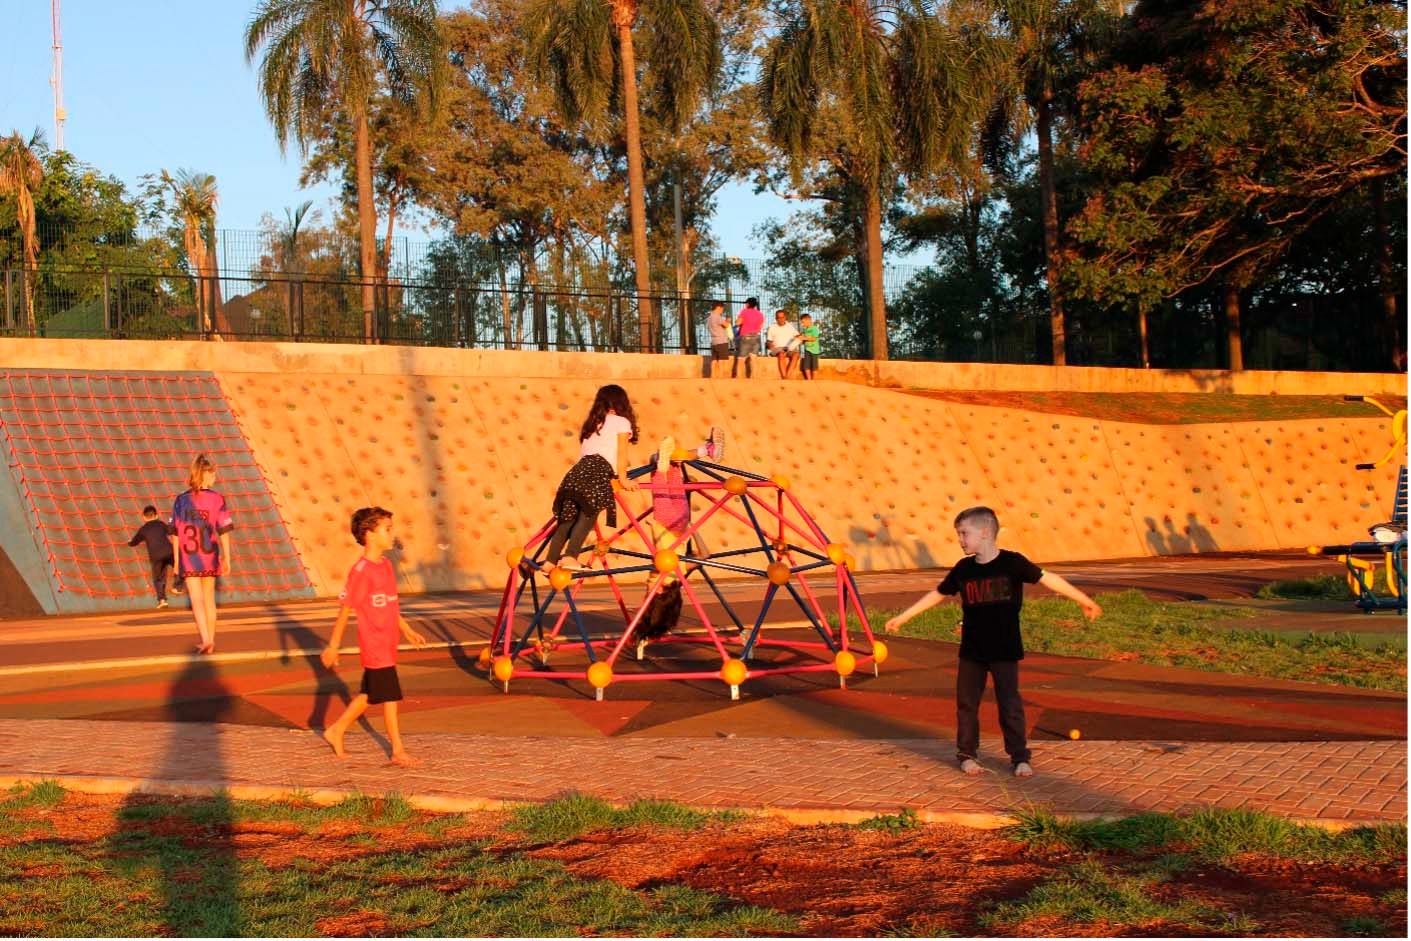 Como seriam os espaços públicos de uma cidade se eles fossem desenhados por crianças?